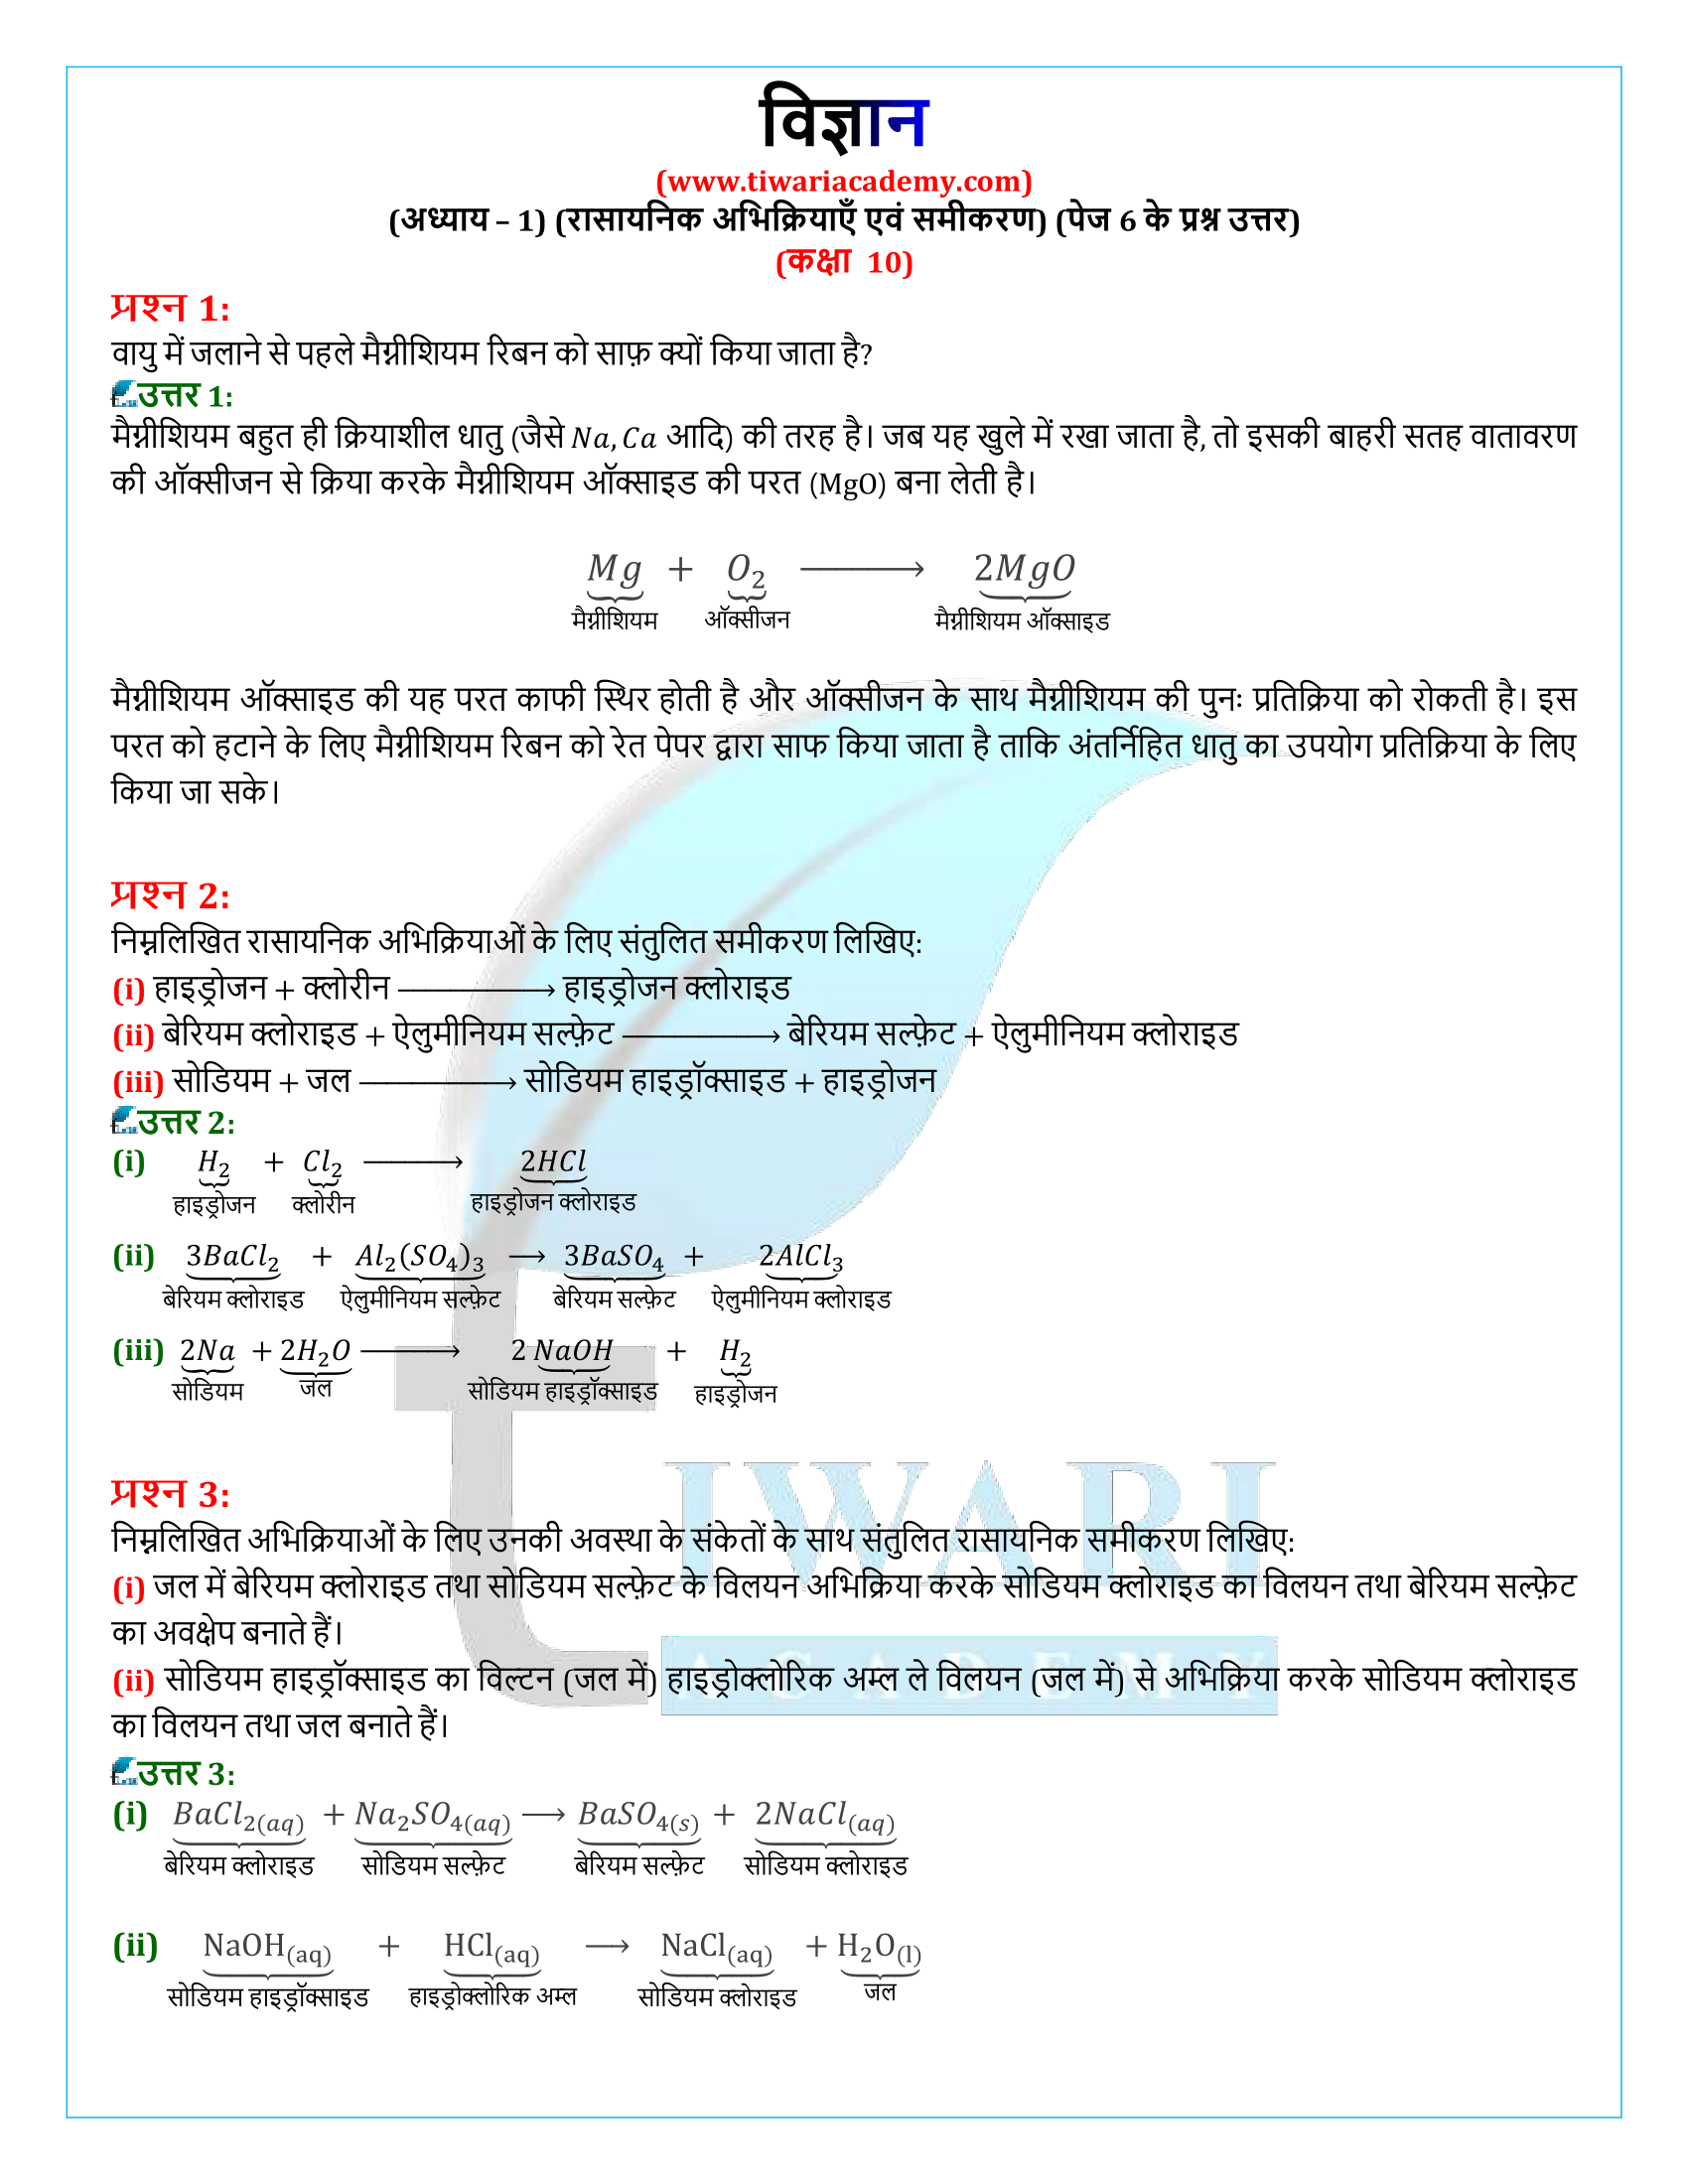 कक्षा 10 विज्ञान अध्याय 1 पेज 6 के प्रश्न उत्तर